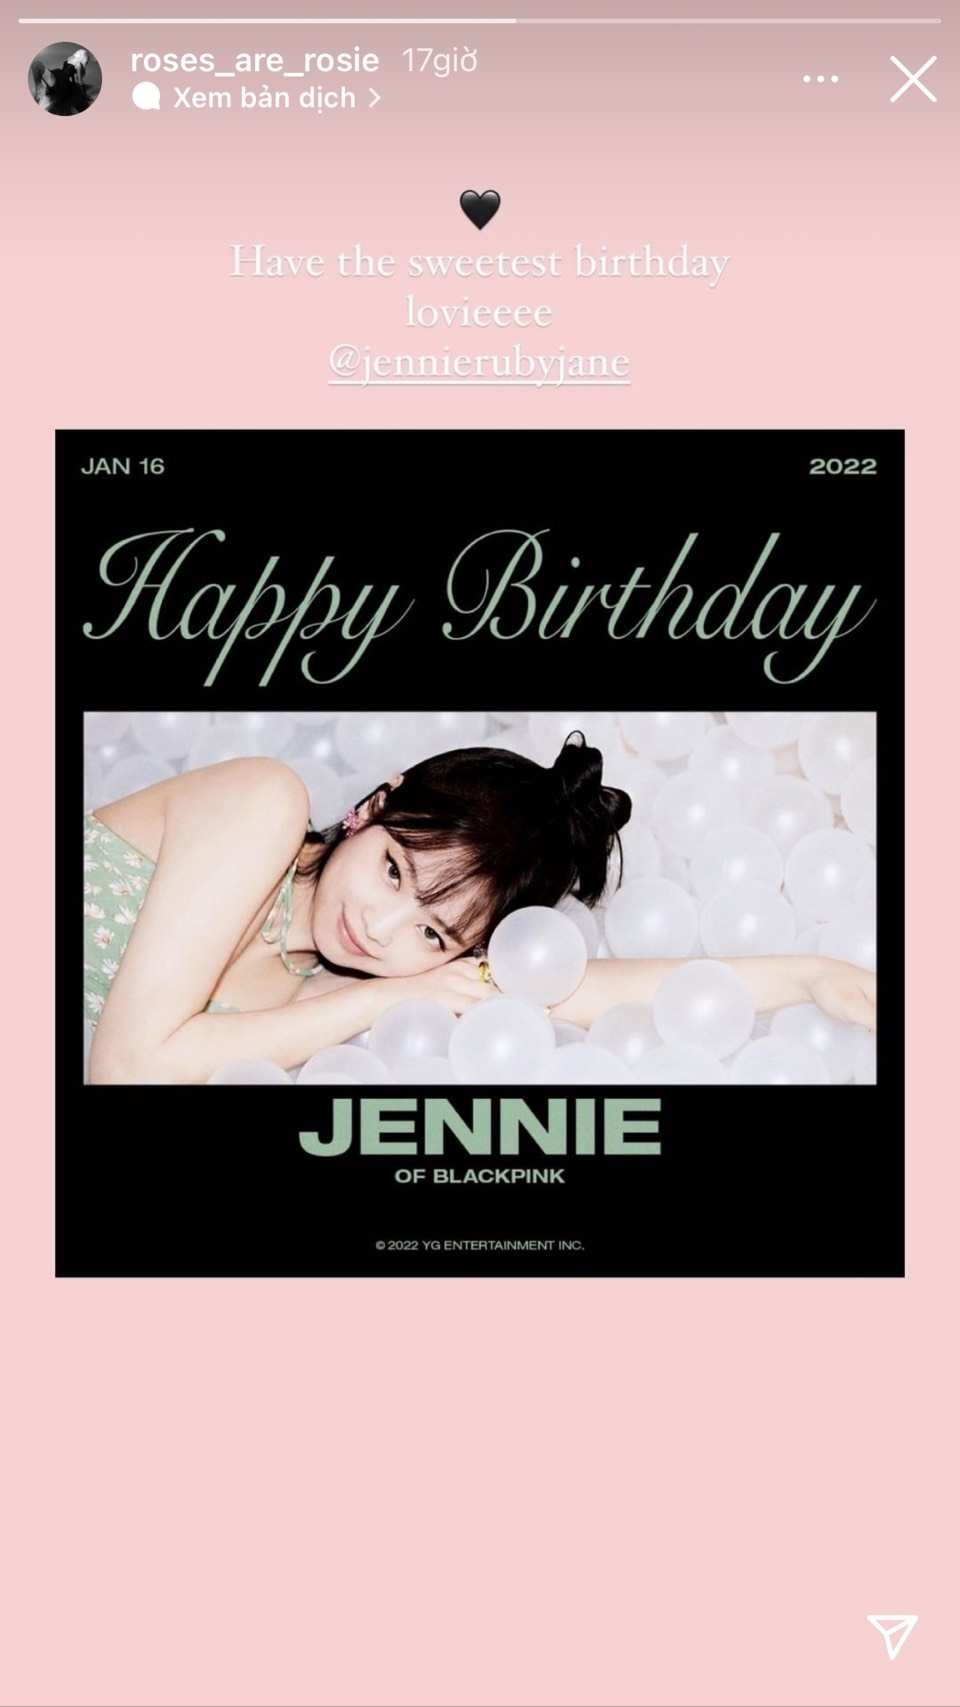 Xỉu up xỉu down với bảng giá tiệc sinh nhật xa hoa của Jennie BLACKPINK   Tuổi Trẻ Online